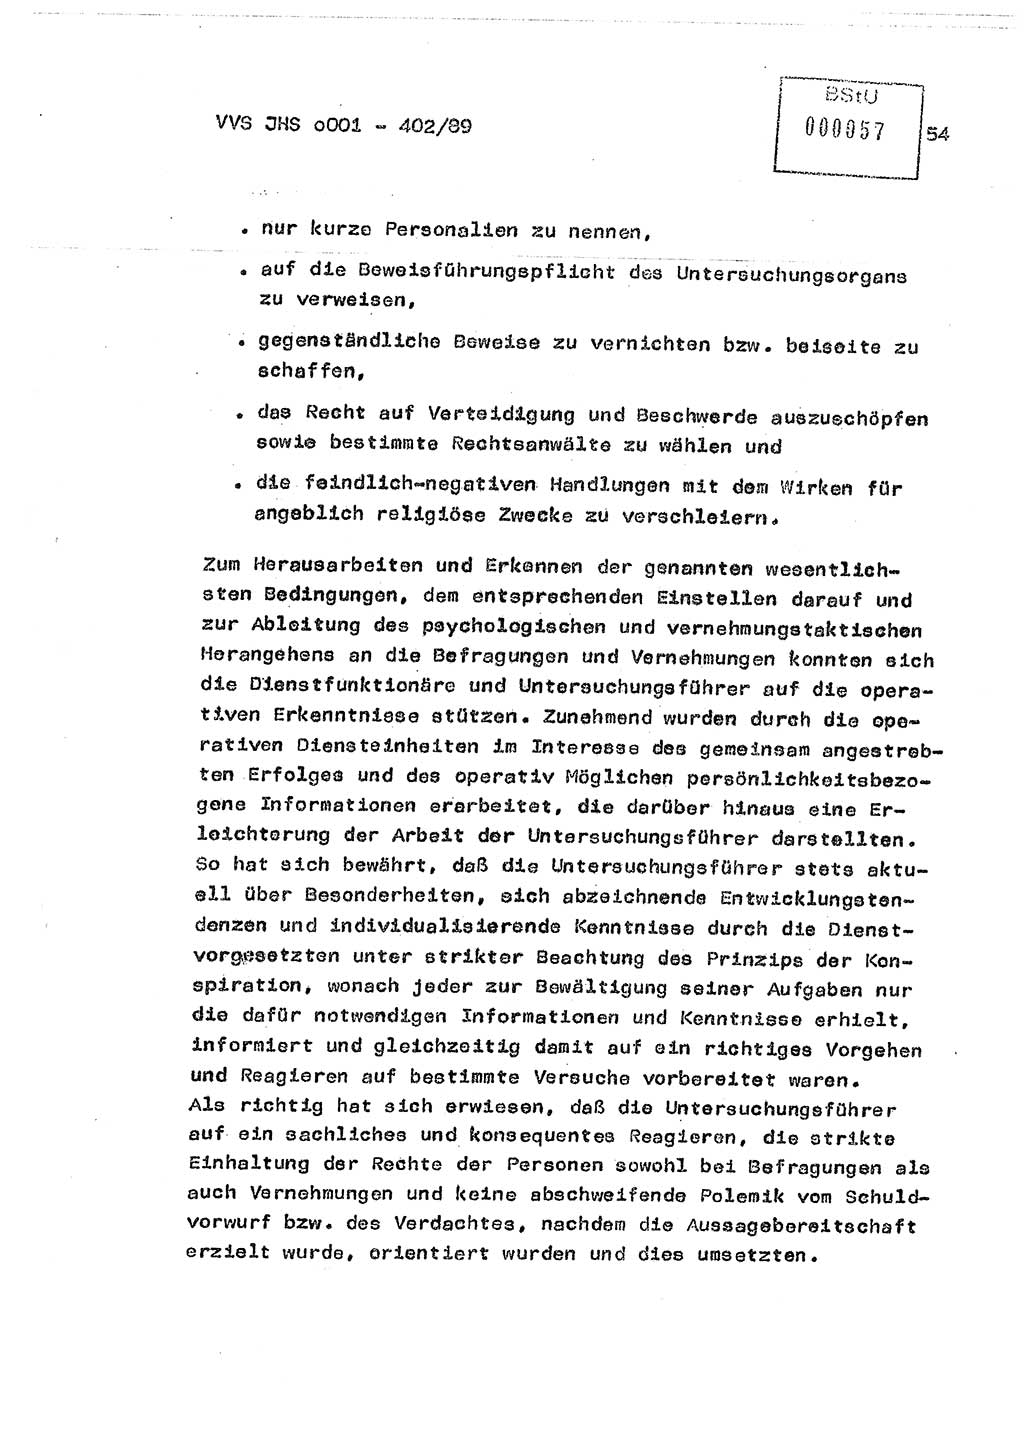 Diplomarbeit Major Günter Müller (HA Ⅸ/9), Ministerium für Staatssicherheit (MfS) [Deutsche Demokratische Republik (DDR)], Juristische Hochschule (JHS), Vertrauliche Verschlußsache (VVS) o001-402/89, Potsdam 1989, Seite 54 (Dipl.-Arb. MfS DDR JHS VVS o001-402/89 1989, S. 54)